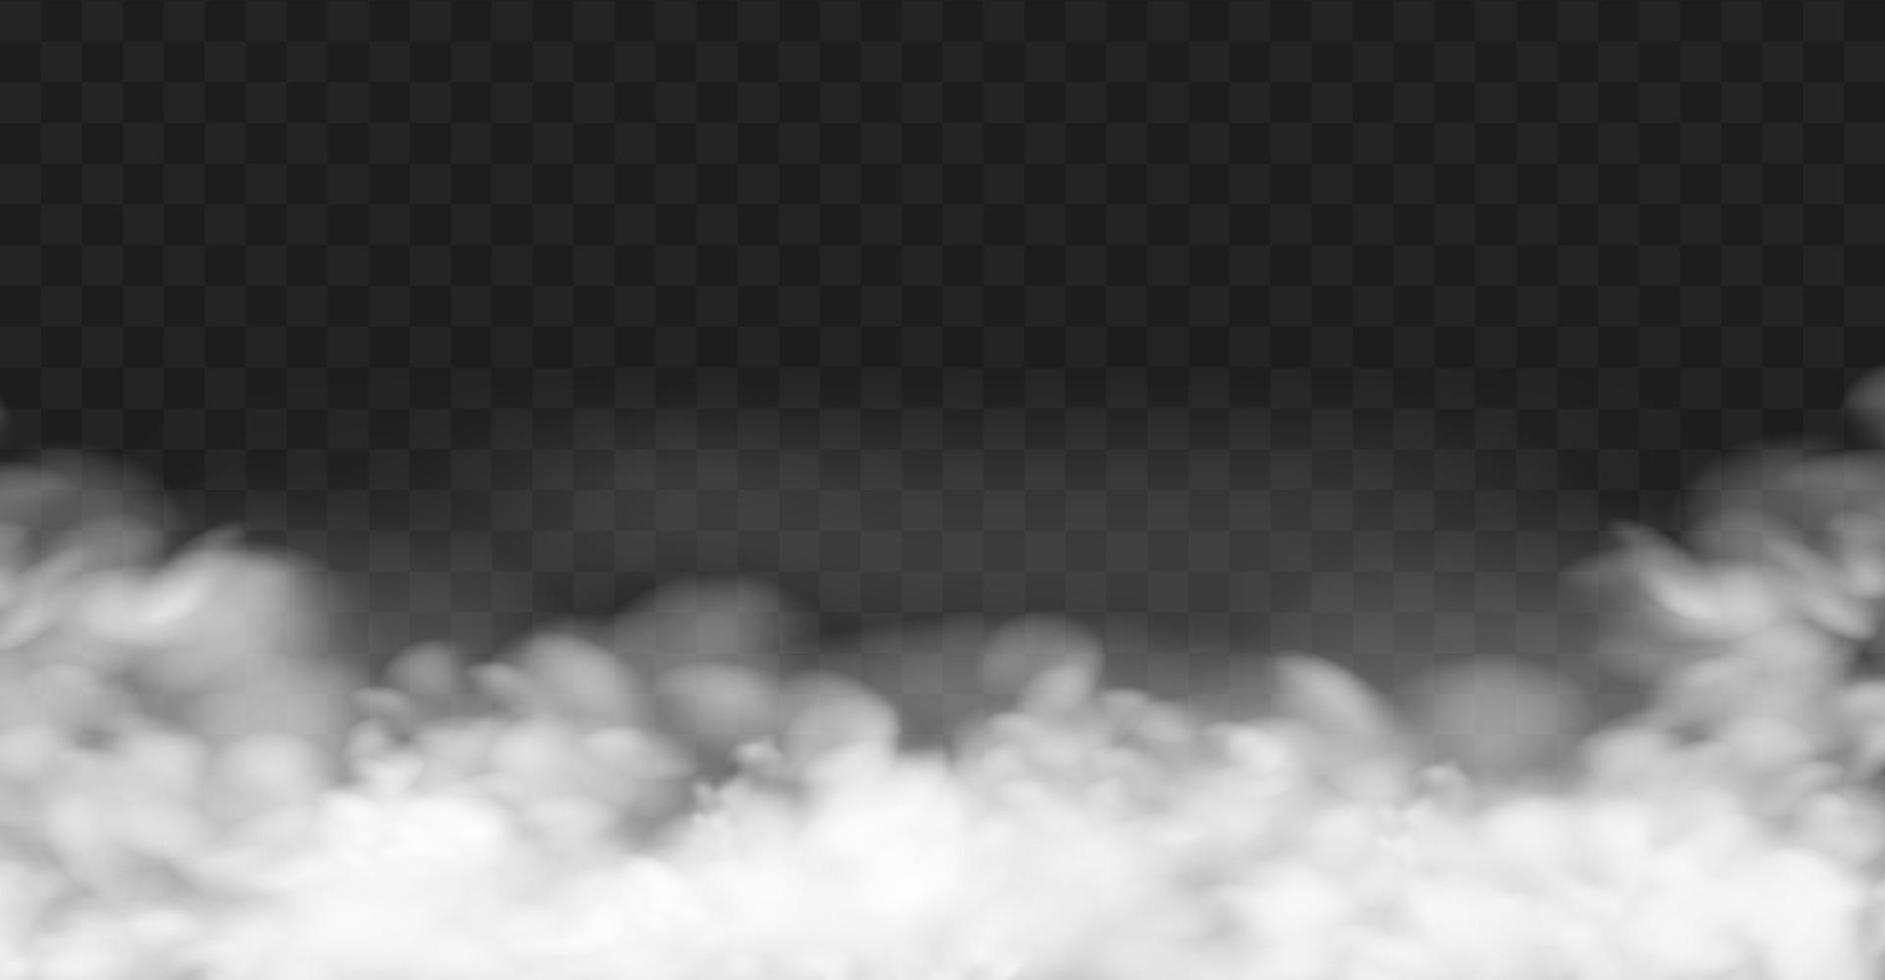 névoa branca ou fumaça no fundo do espaço de cópia escuro. ilustração vetorial vetor